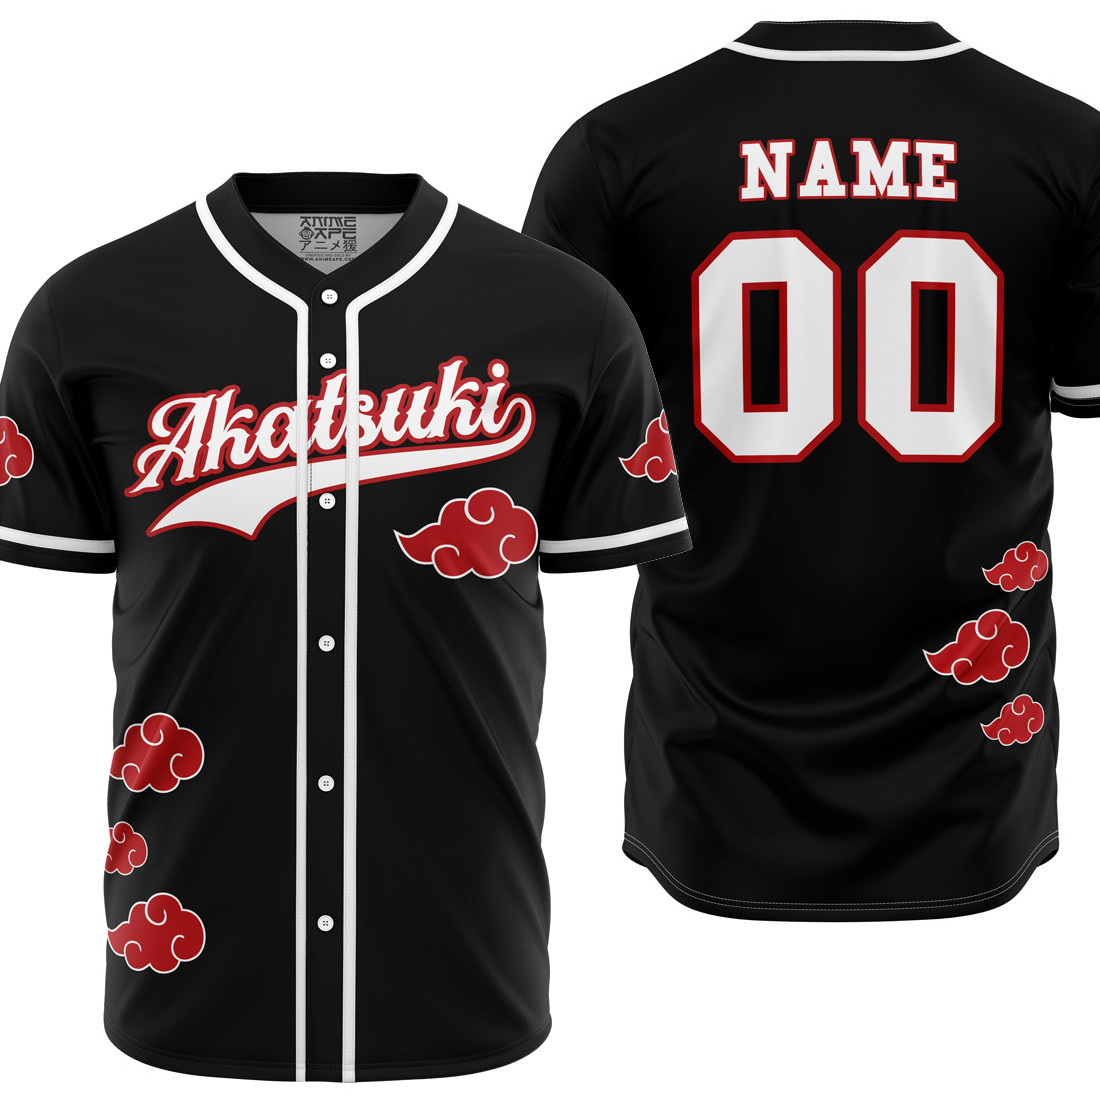 Personalized Akatsuki Naruto Baseball Jersey